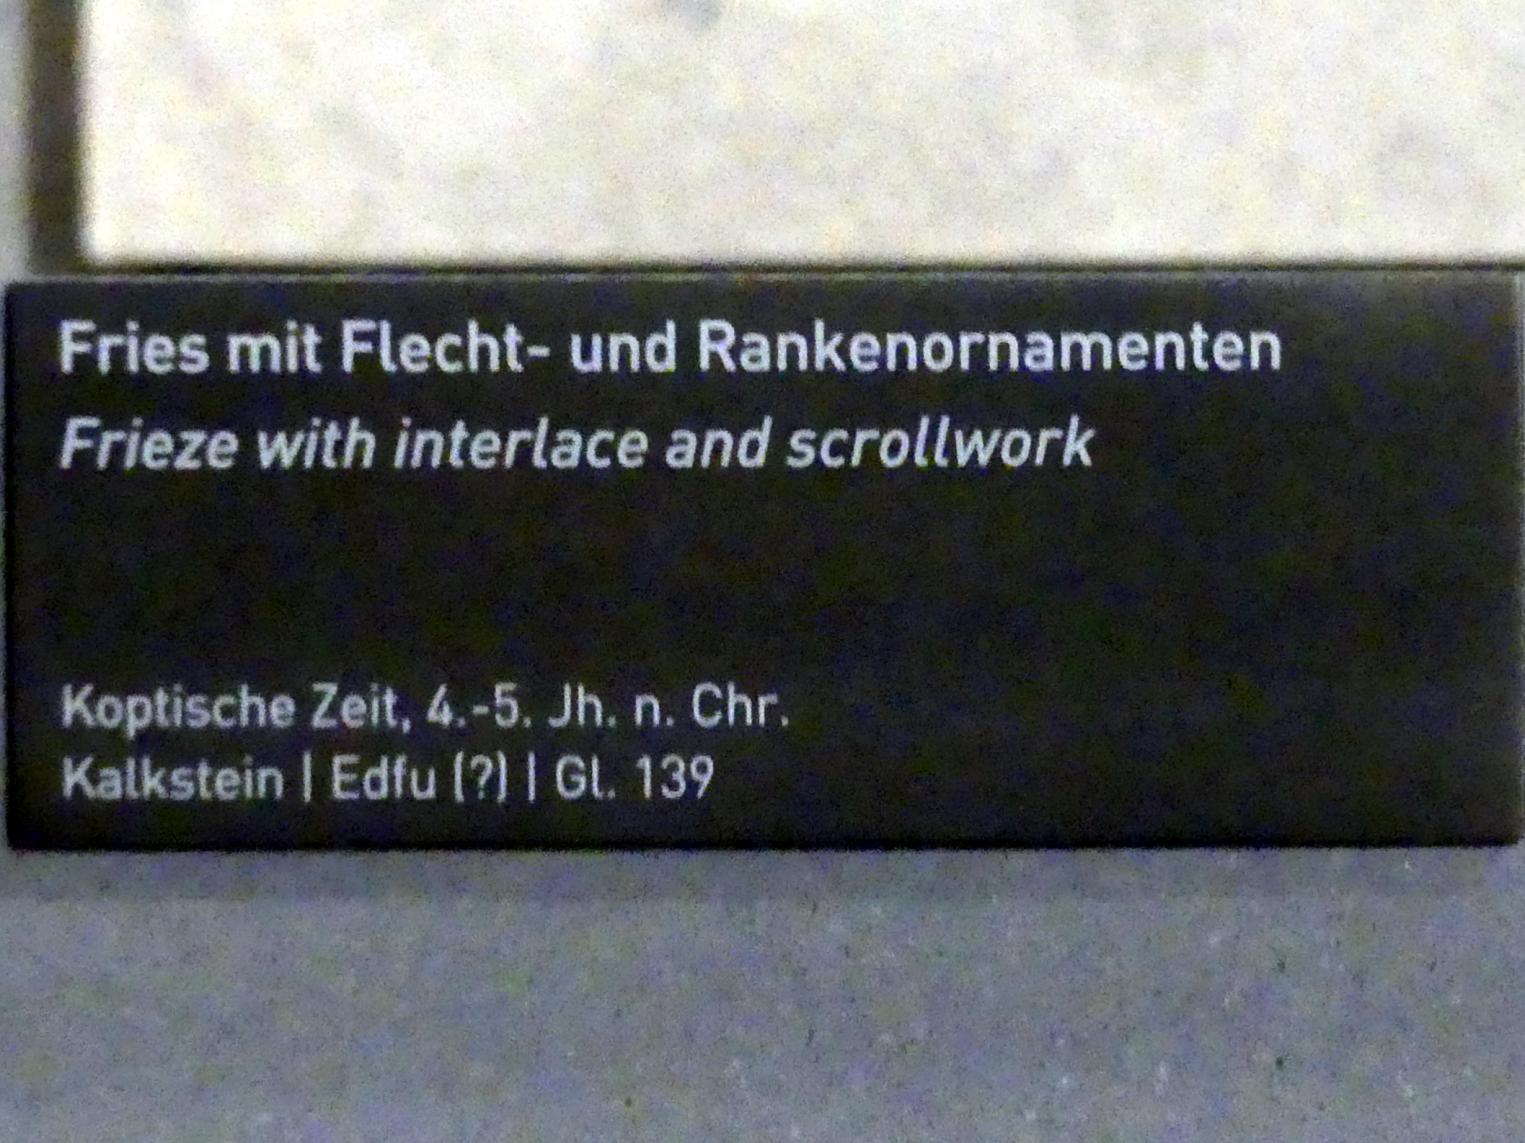 Fries mit Flecht- und Rankenornamenten, Koptische Zeit, 200 - 800, 300 - 500, Bild 2/2